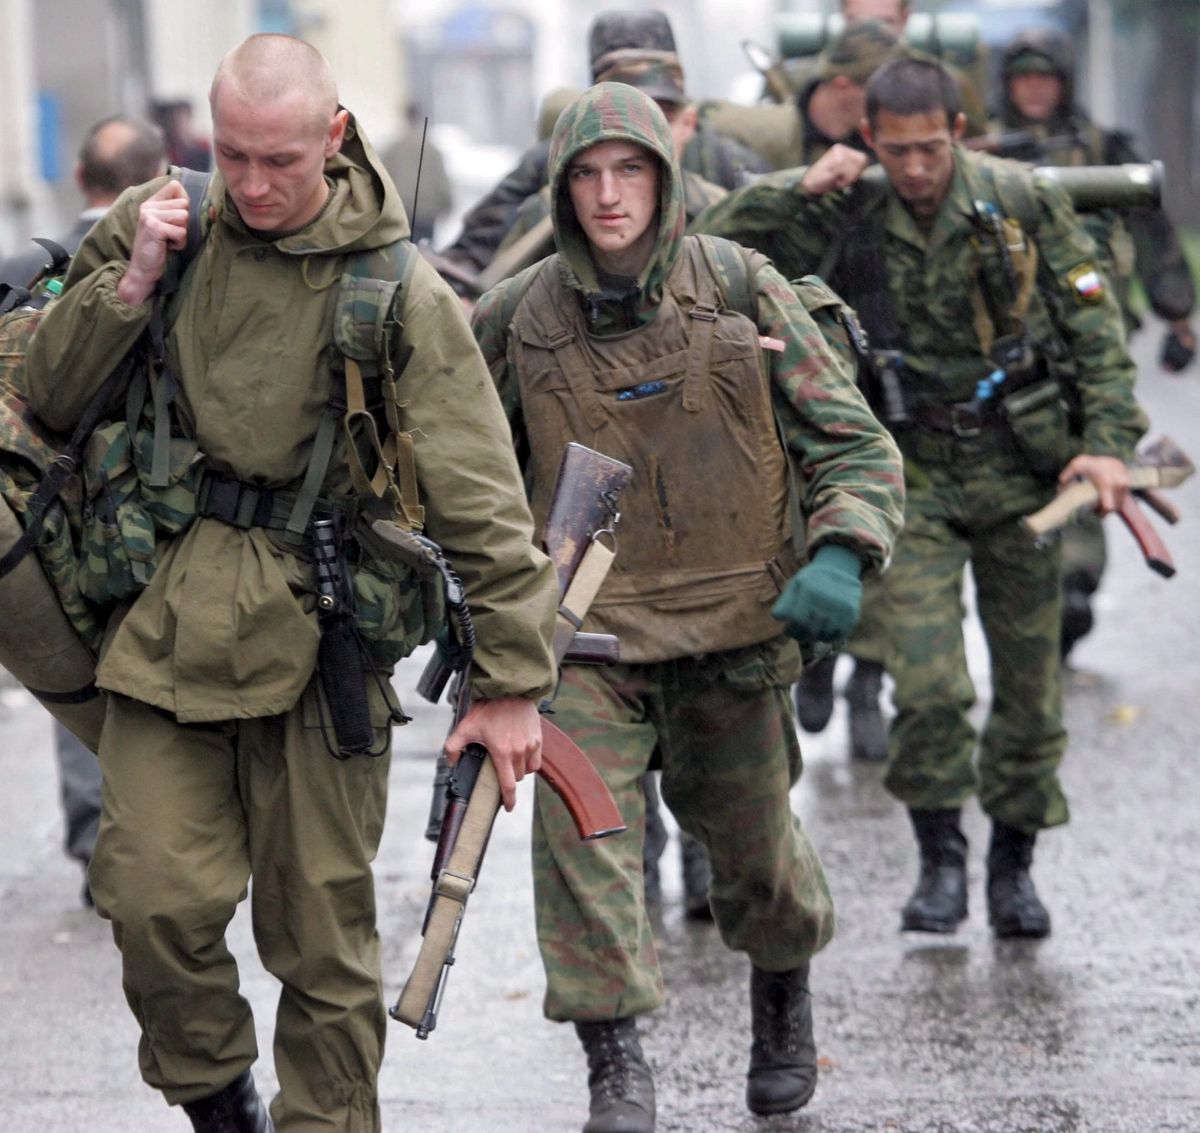 Rosyjskie siły specjalne są źle zagospodarowywane na ukraińskim froncie - uważa fiński generał Pekka Toveri